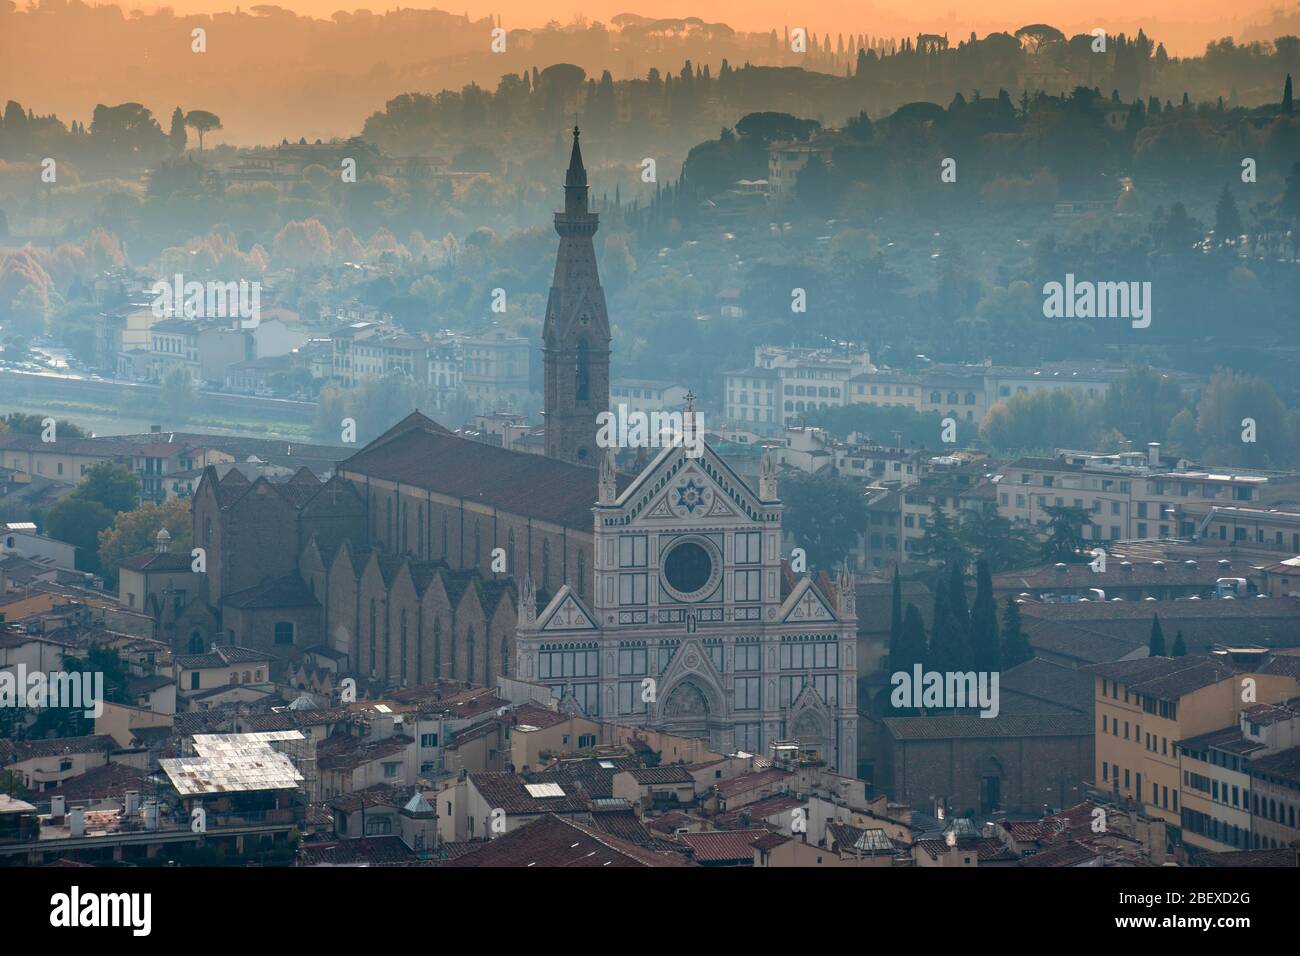 Vista sulla città monumentale di Firenze in Italia Foto Stock